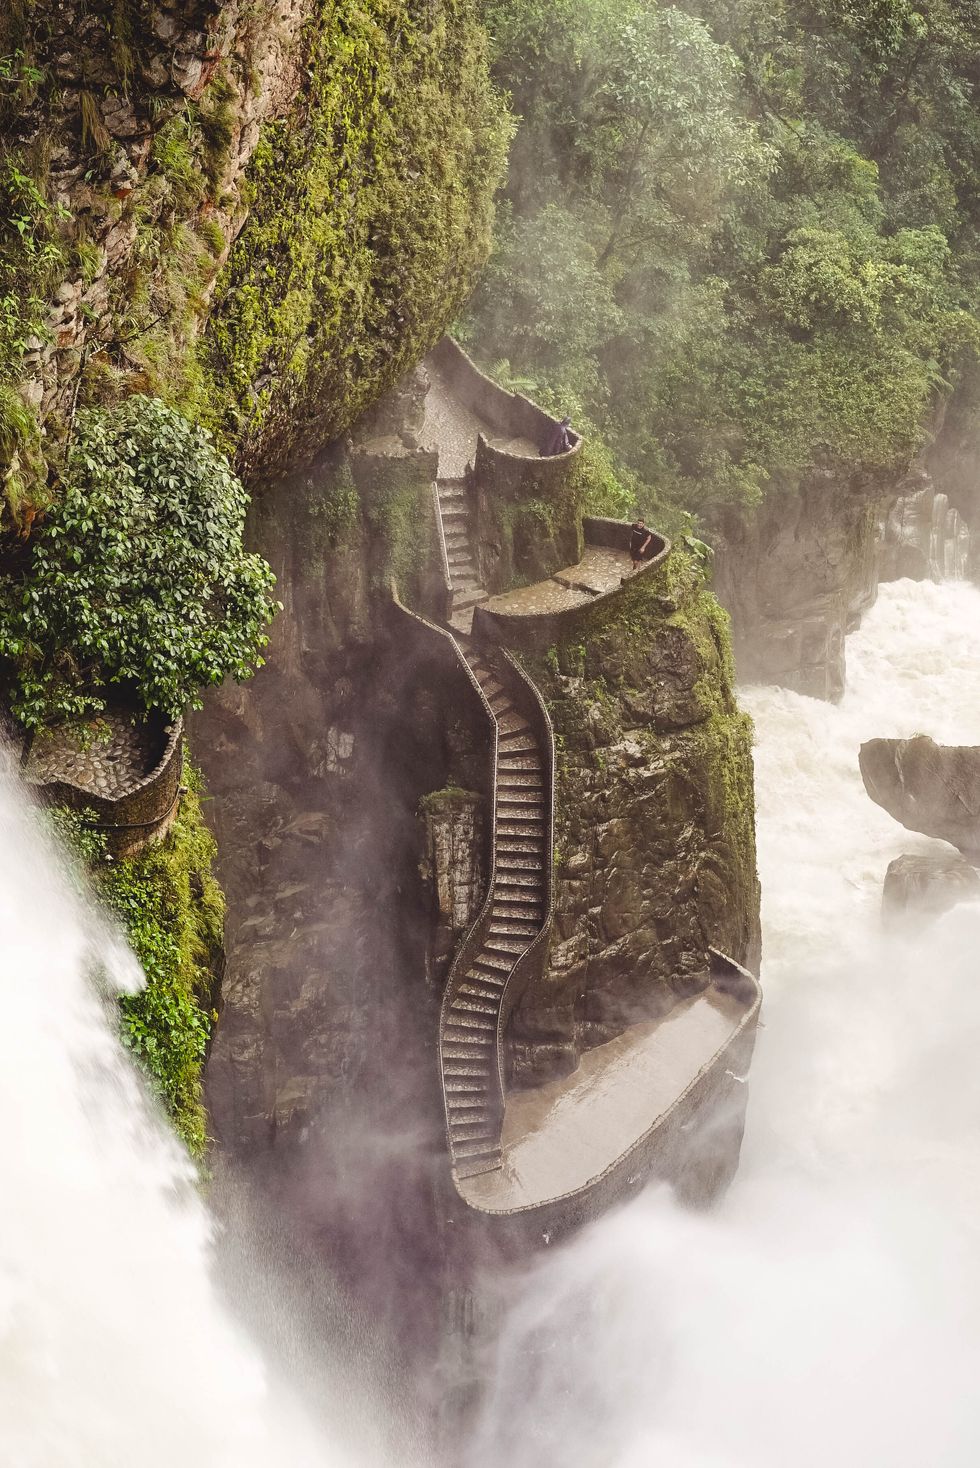 Pailón del Diablo, Ecuador Được gọi là Devil's Cauldron trong tiếng Anh, điểm đến đi bộ đường dài hẻo lánh trong rừng nhiệt đới Ecuador này giống như một thứ gì đó trong một câu chuyện cổ tích.